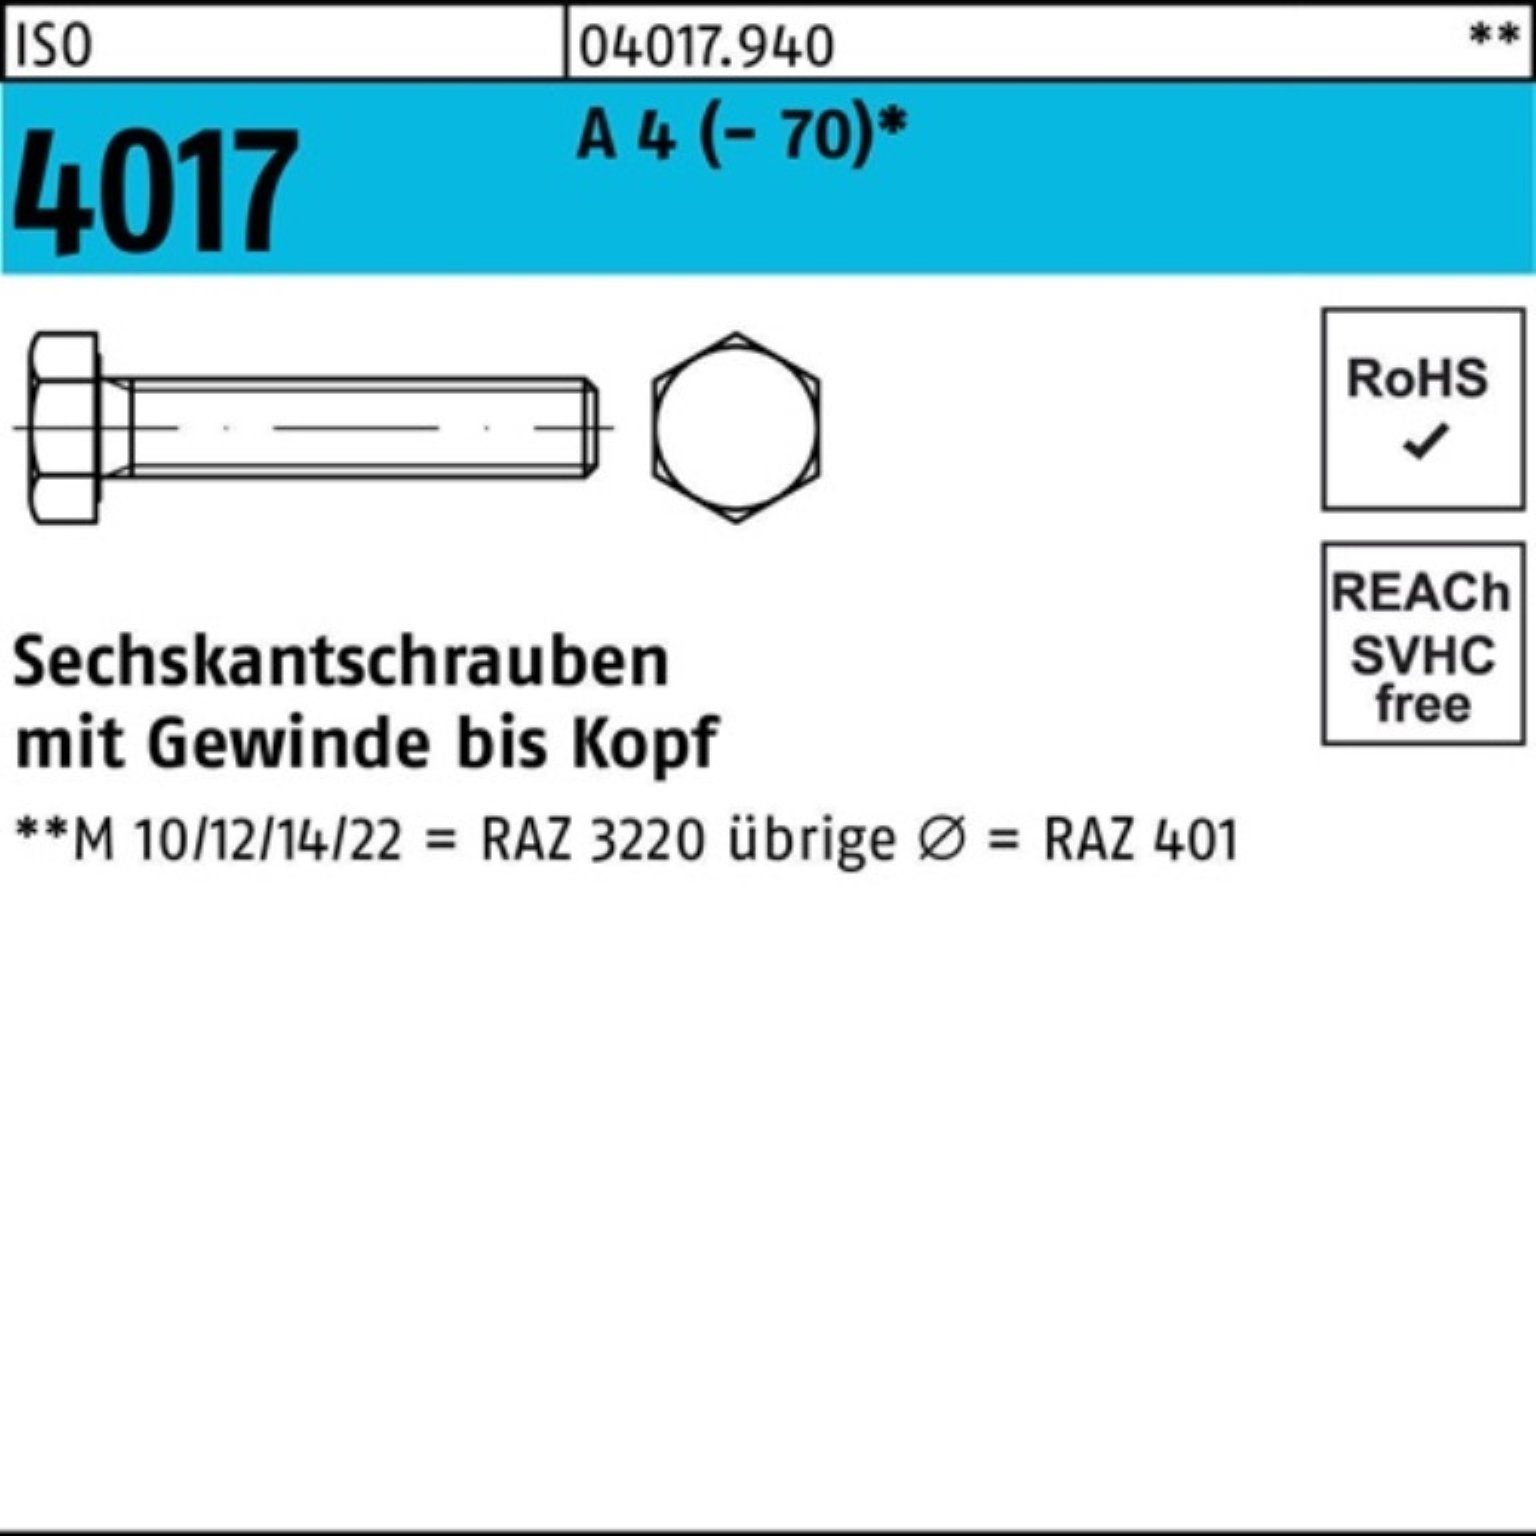 Bufab Sechskantschraube 200er Pack Sechskantschraube ISO 4017 VG M5x 60 A 4 (70) 200 Stück